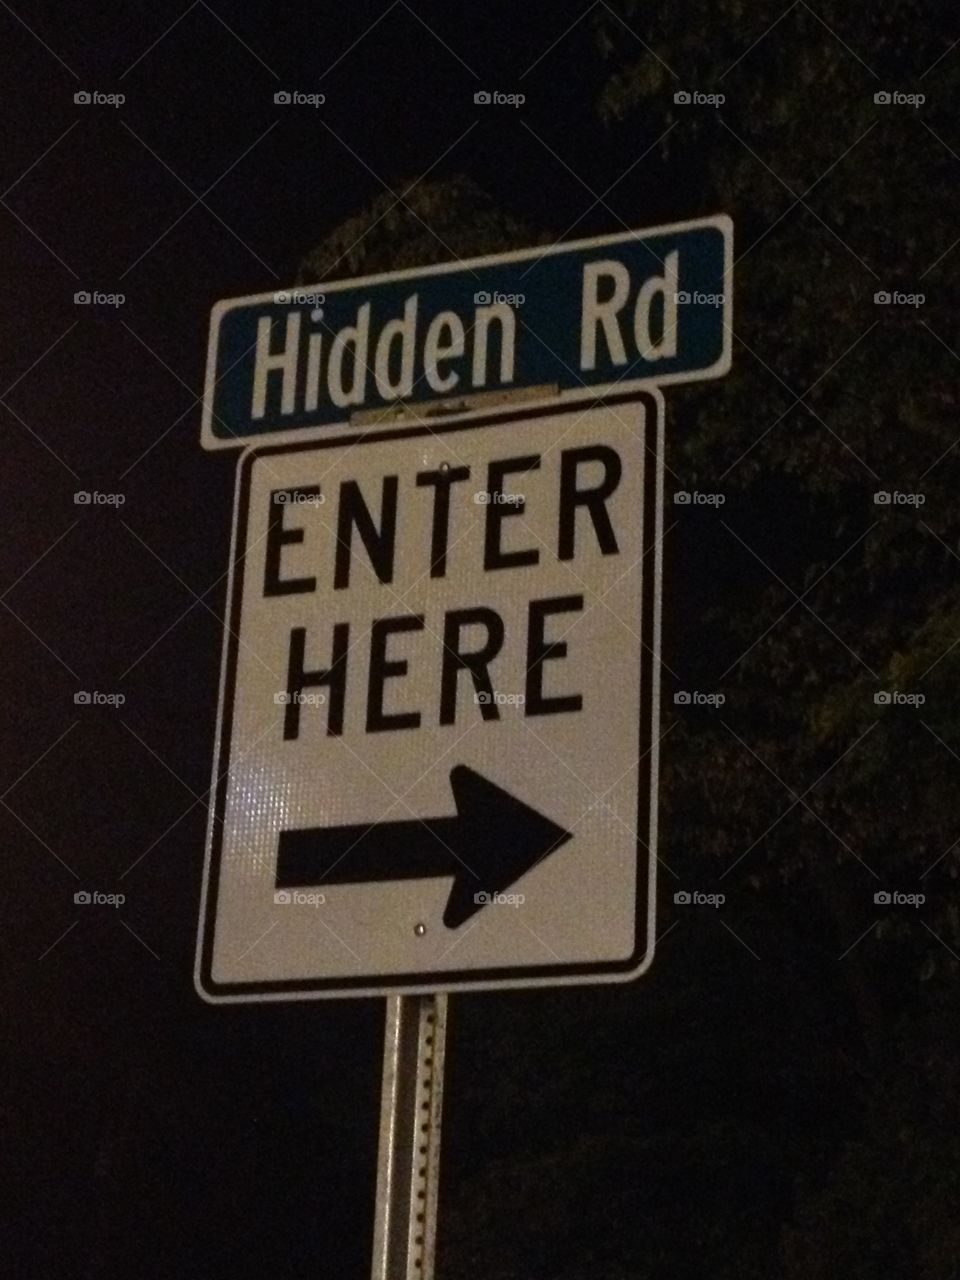 Hidden Road. Hidden Road...enter here...